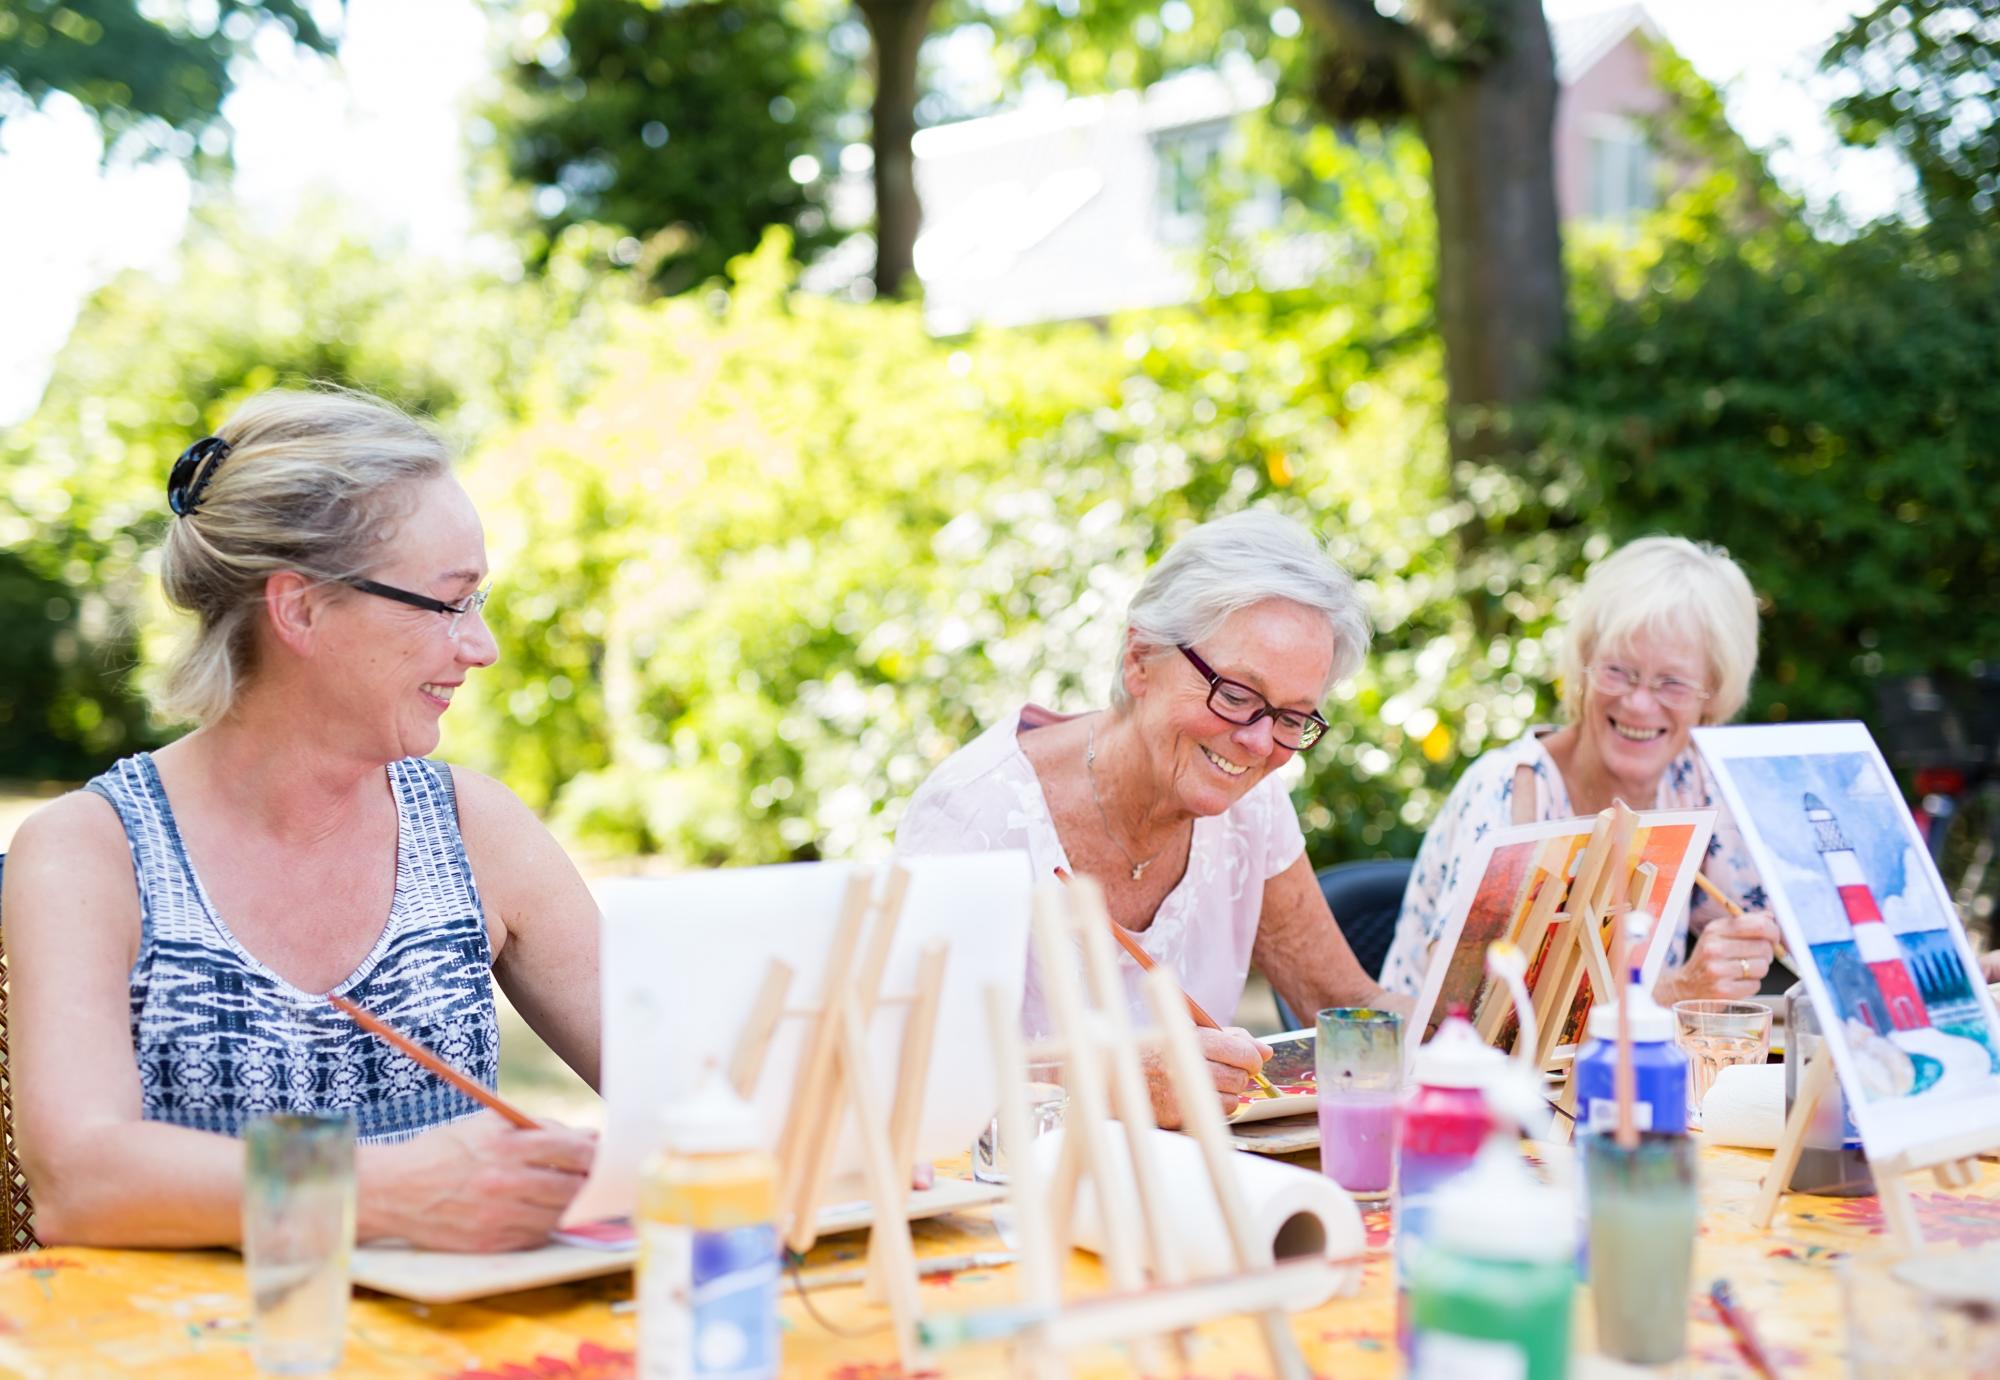 Group of happy elderly women attending an outdoor art class in a garden.